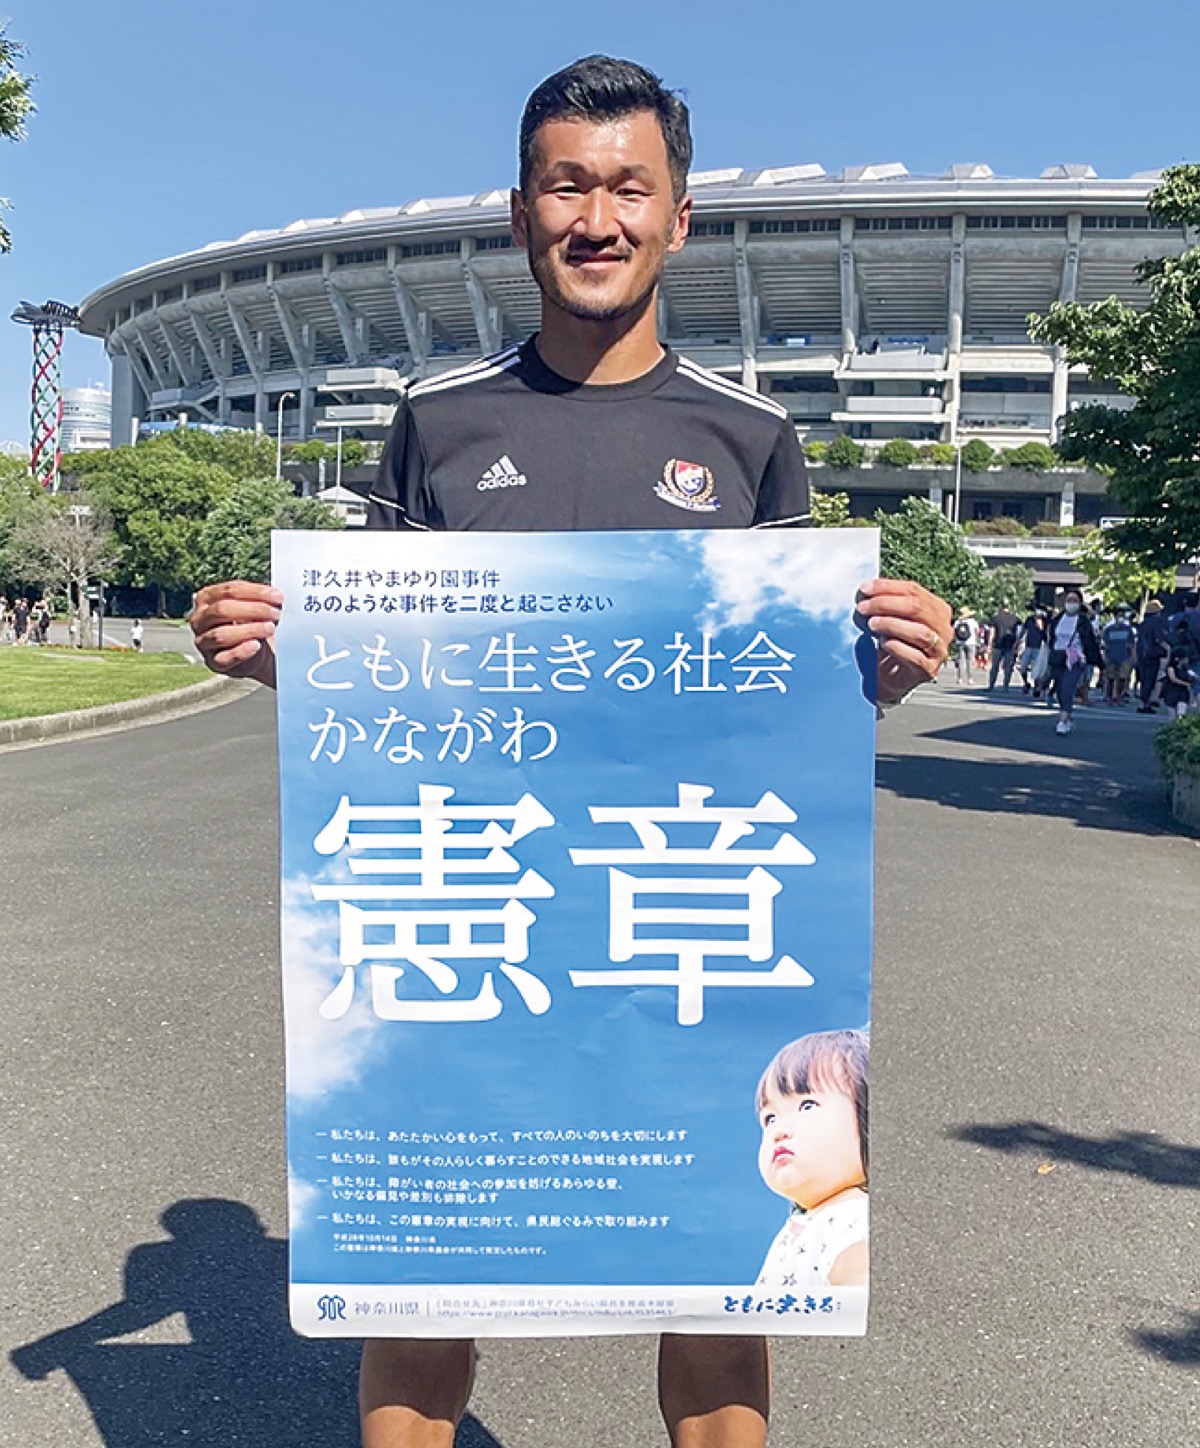 憲章ポスターを持つ横浜市出身で元F・マリノス選手の富澤清太郎コーチ